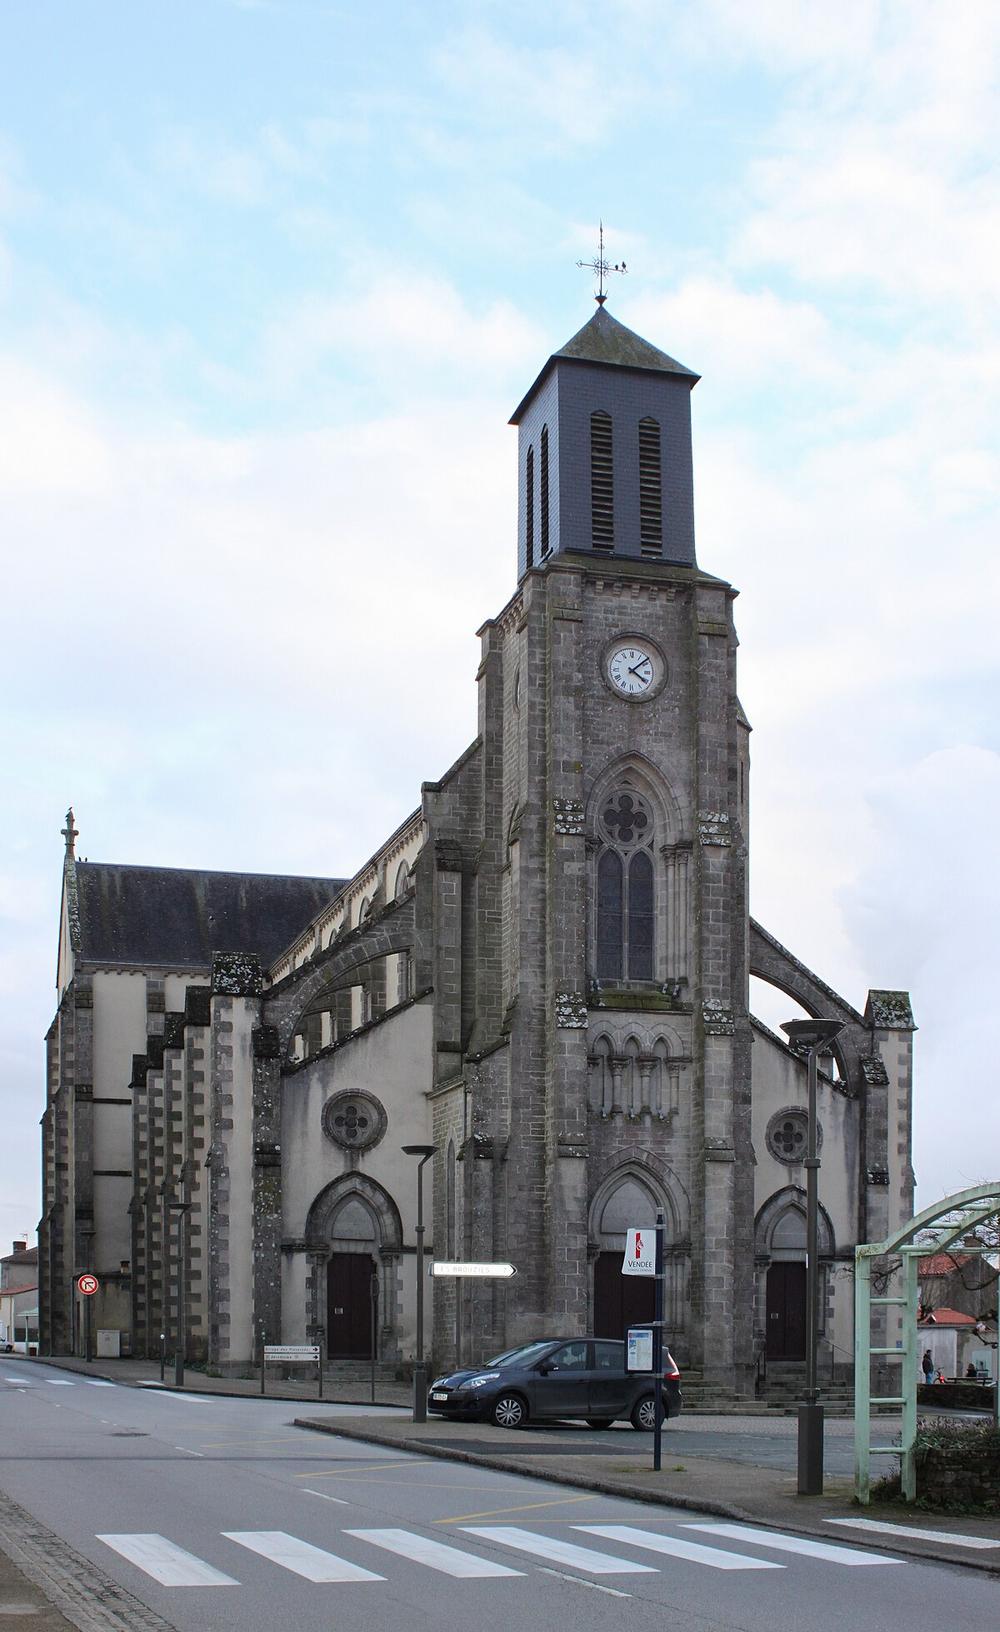 Une église en pierre avec une tour et une horloge.